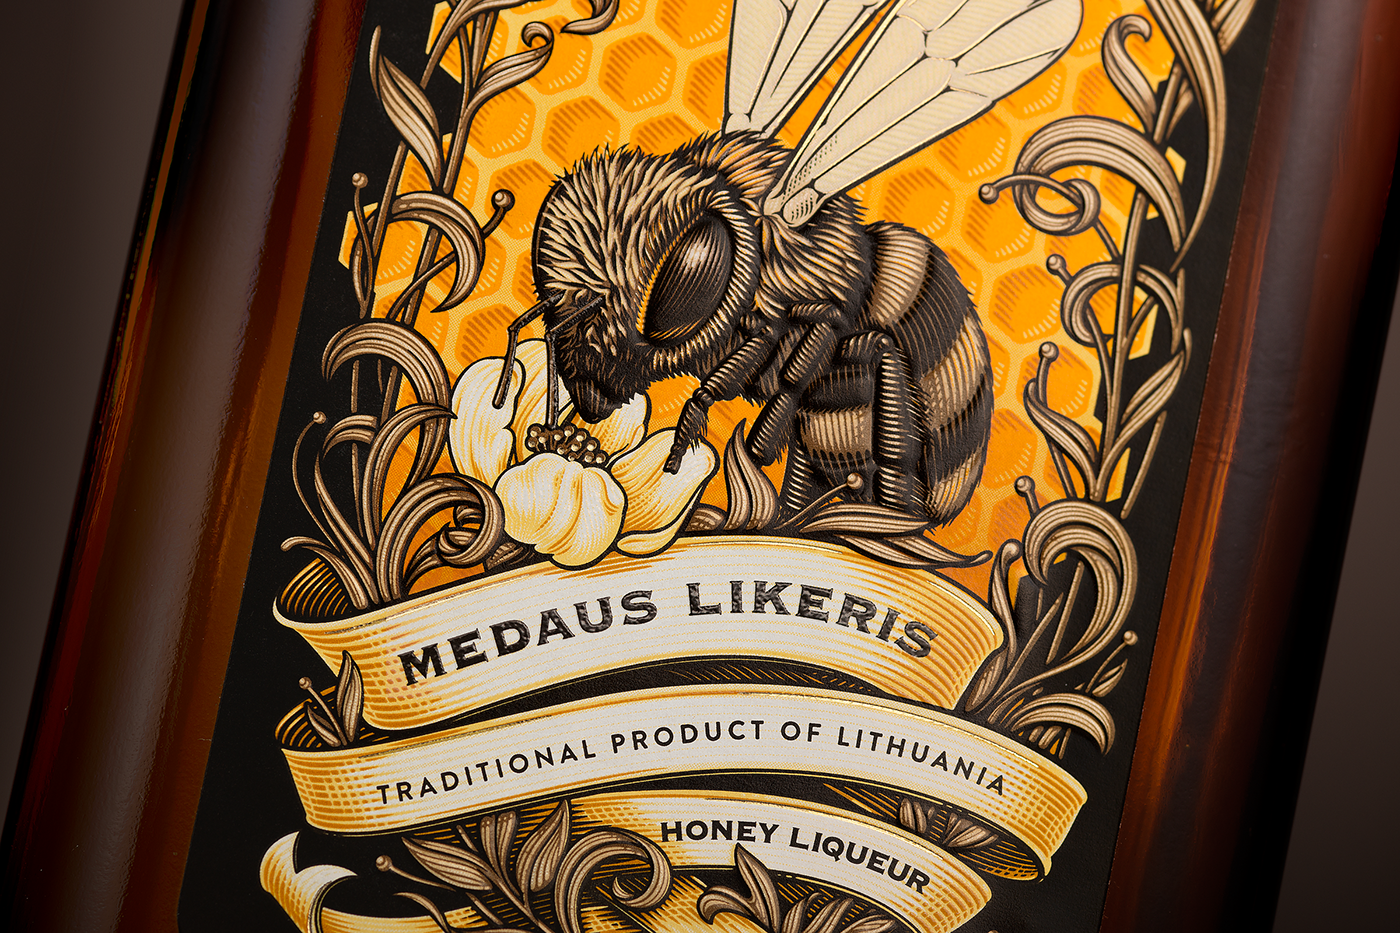 krupnik Label Liqueur etiquette packaging design Stumbras Krupnikas honey liqueur Lithuanian